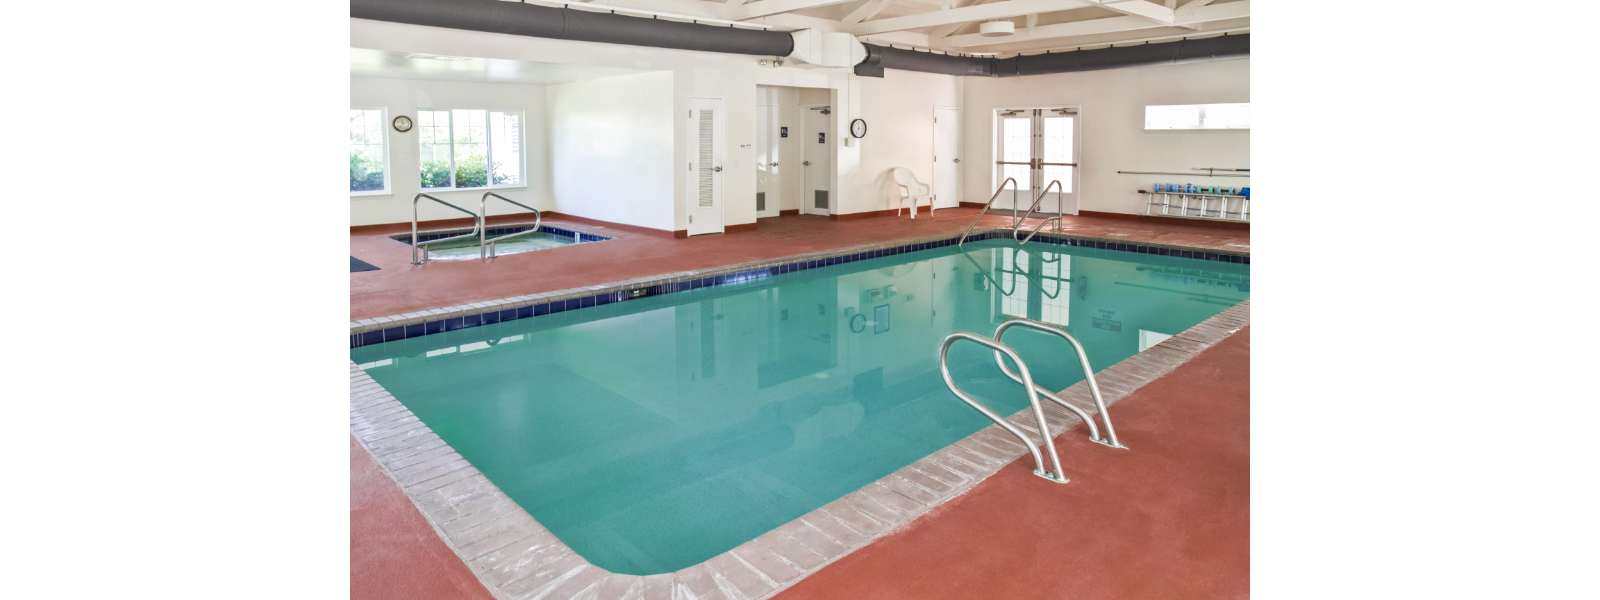 Stoneybrook Lodge Pool'